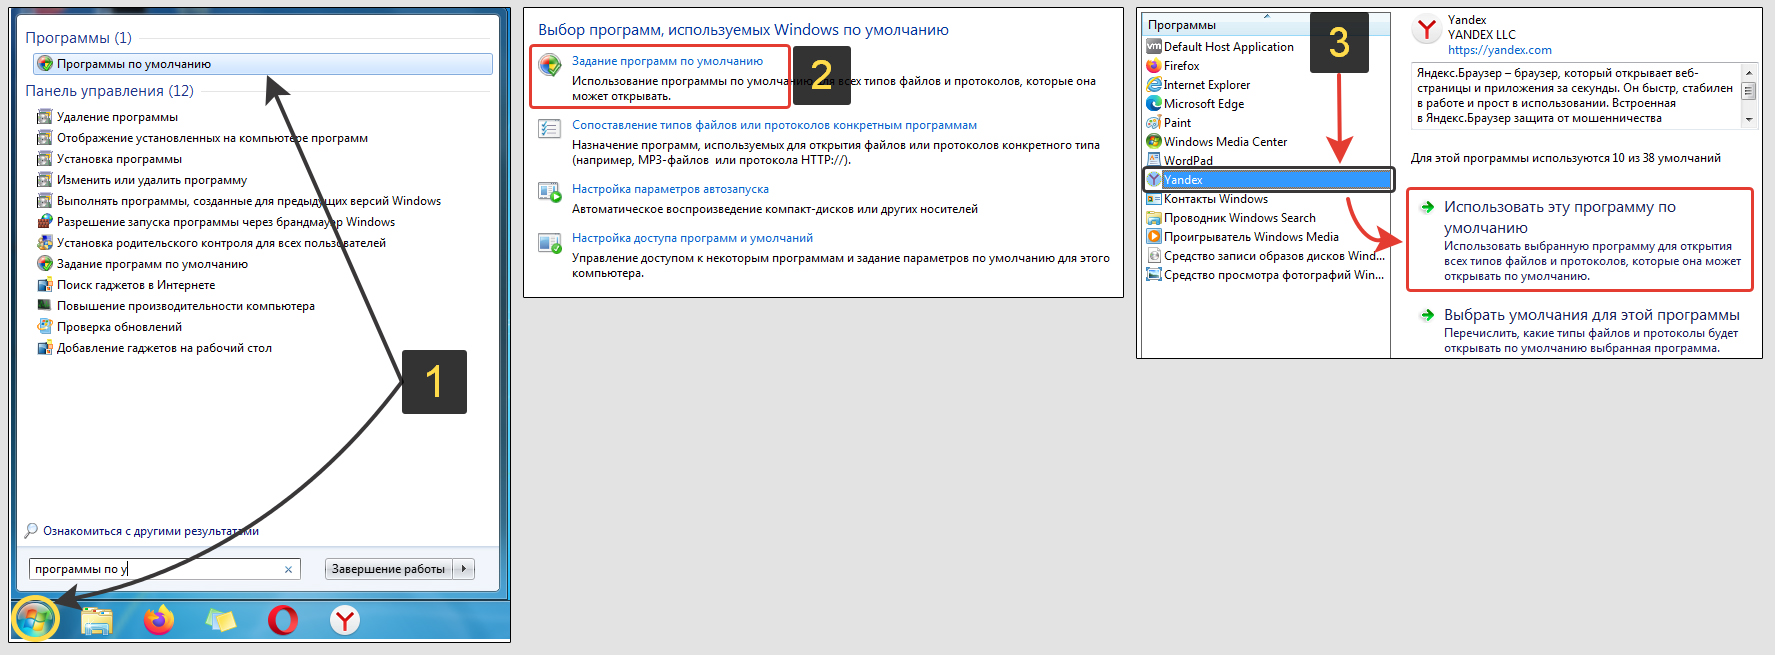 Программы по умолчанию в Windows 7, настройка Yandex.